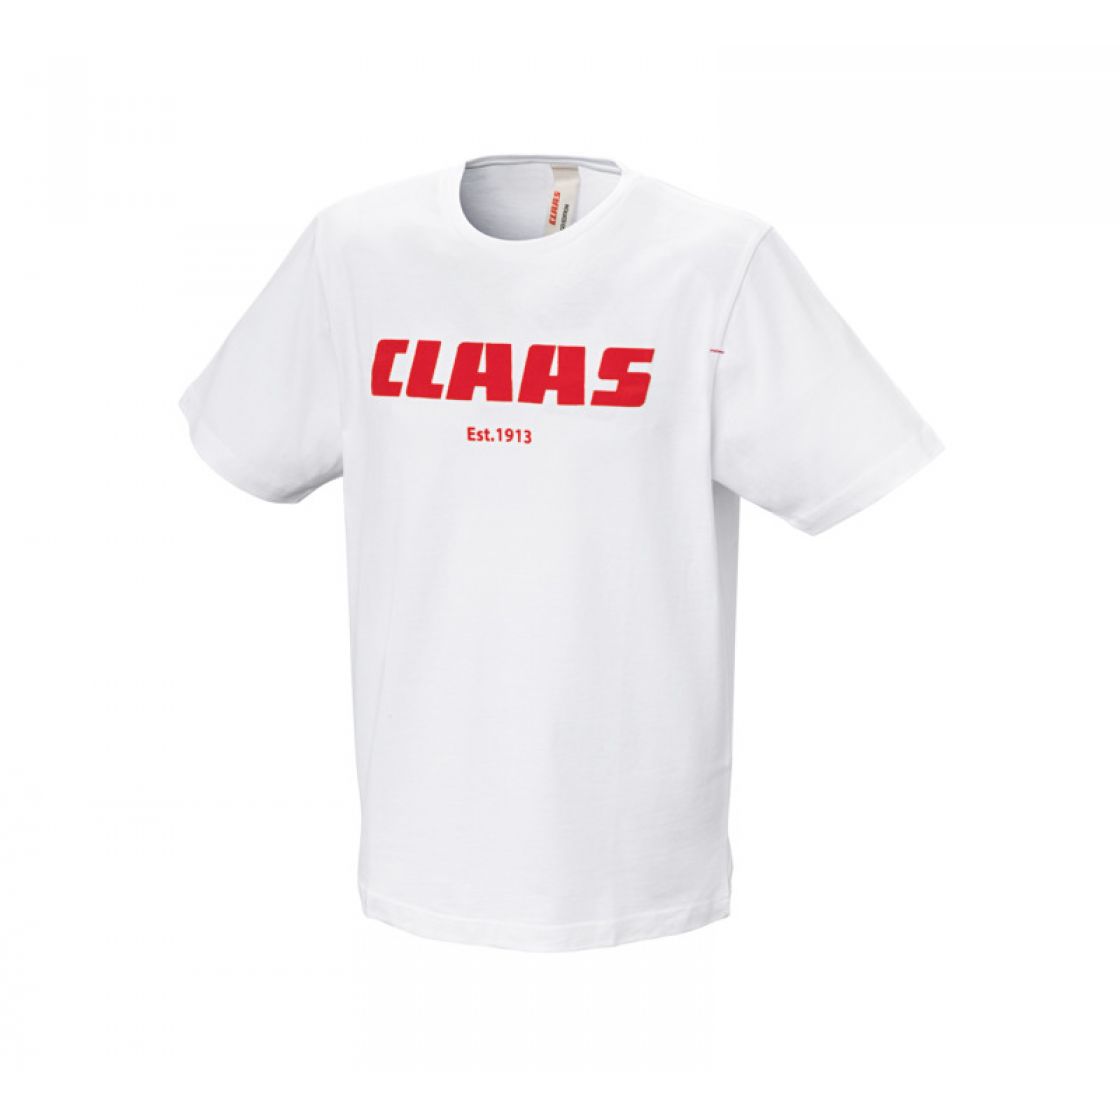 Claas kratka majica - bela